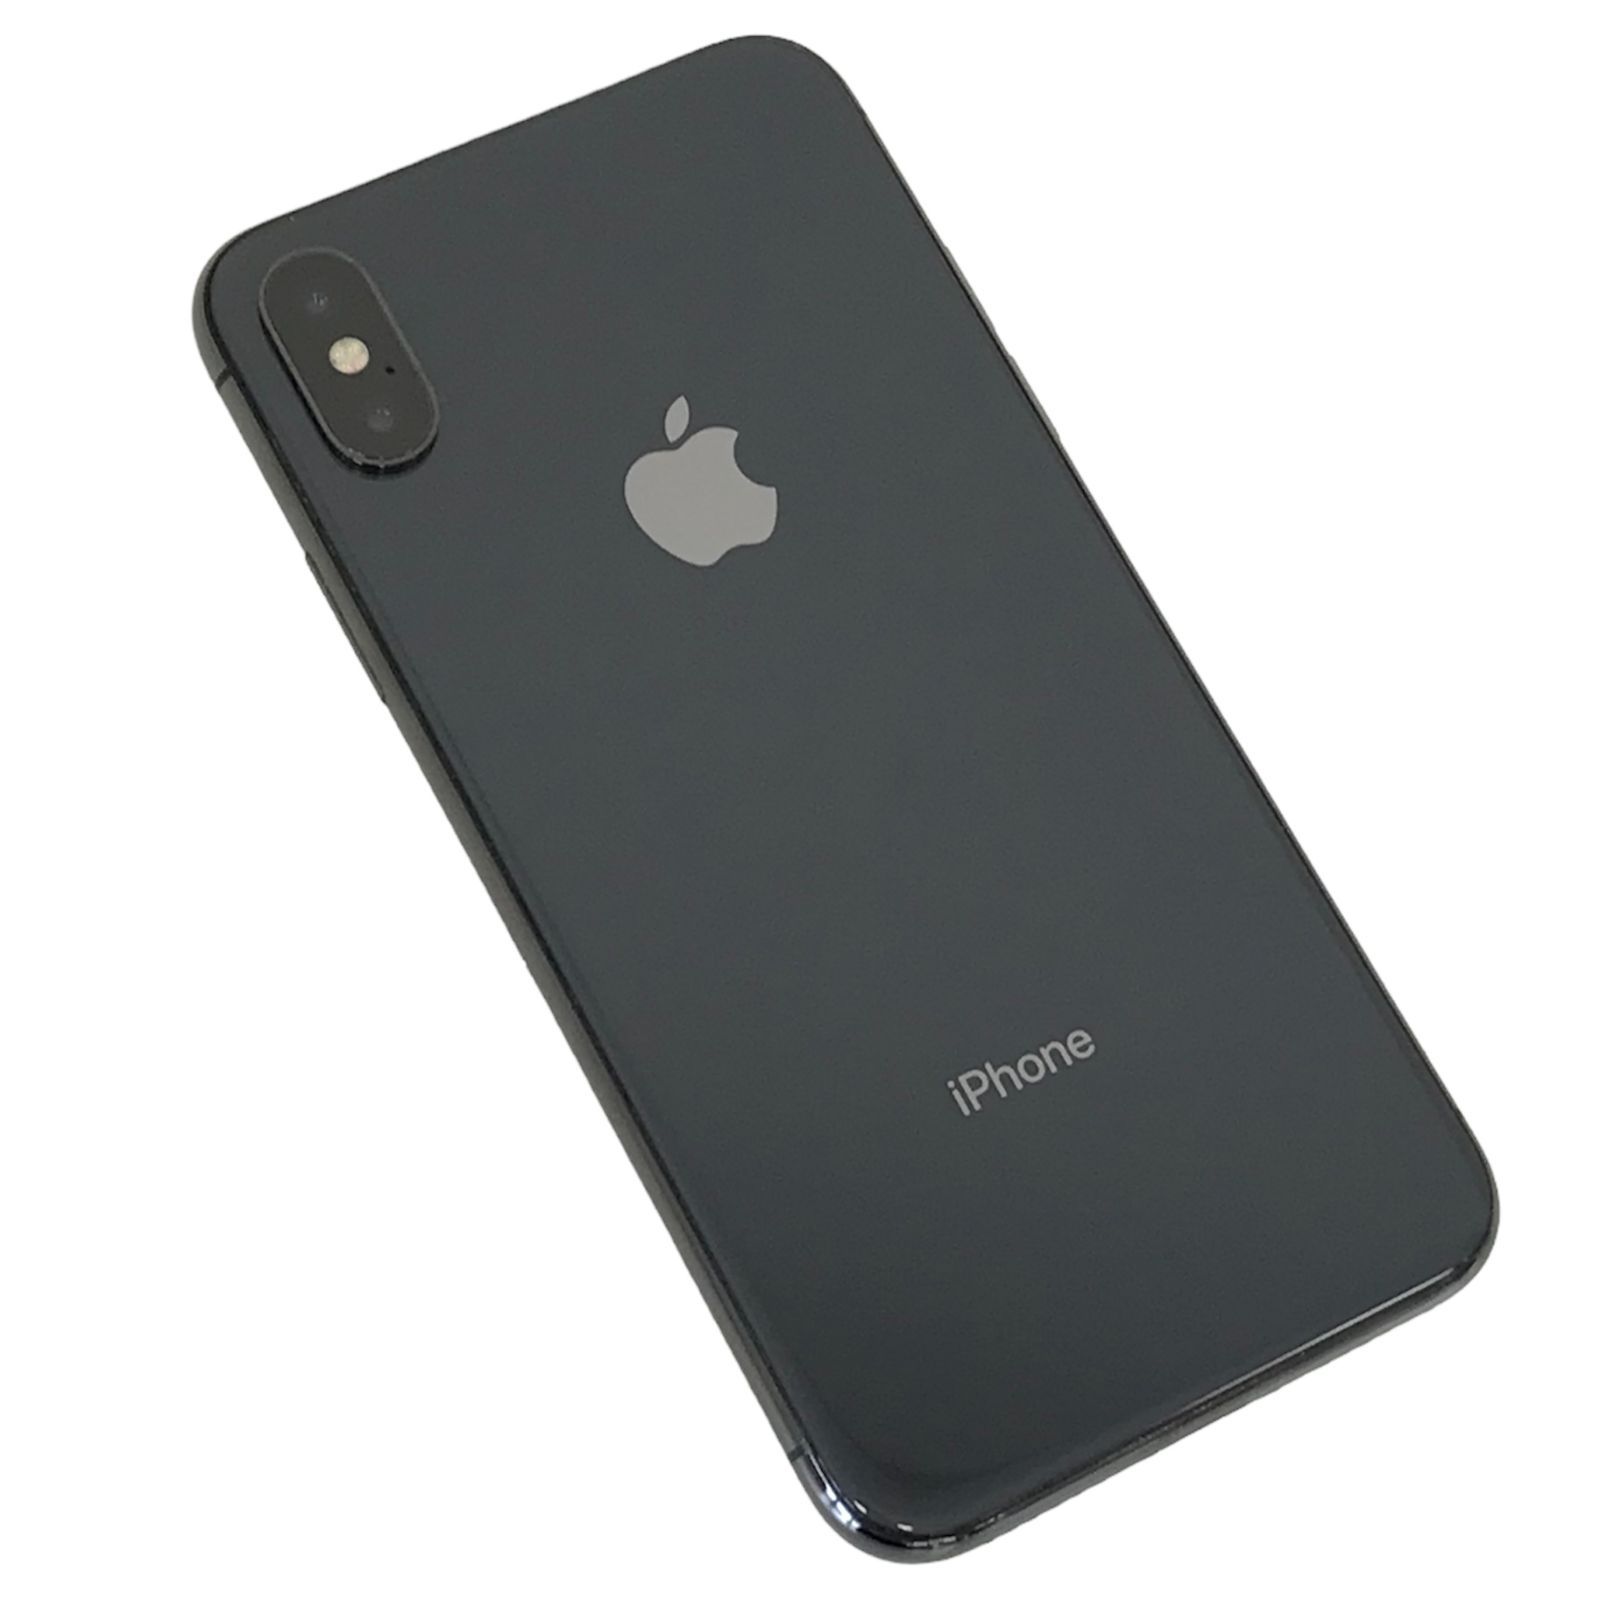 爆買い低価iPhone X スペースグレー 64GB SIMロック解除済み スマートフォン本体